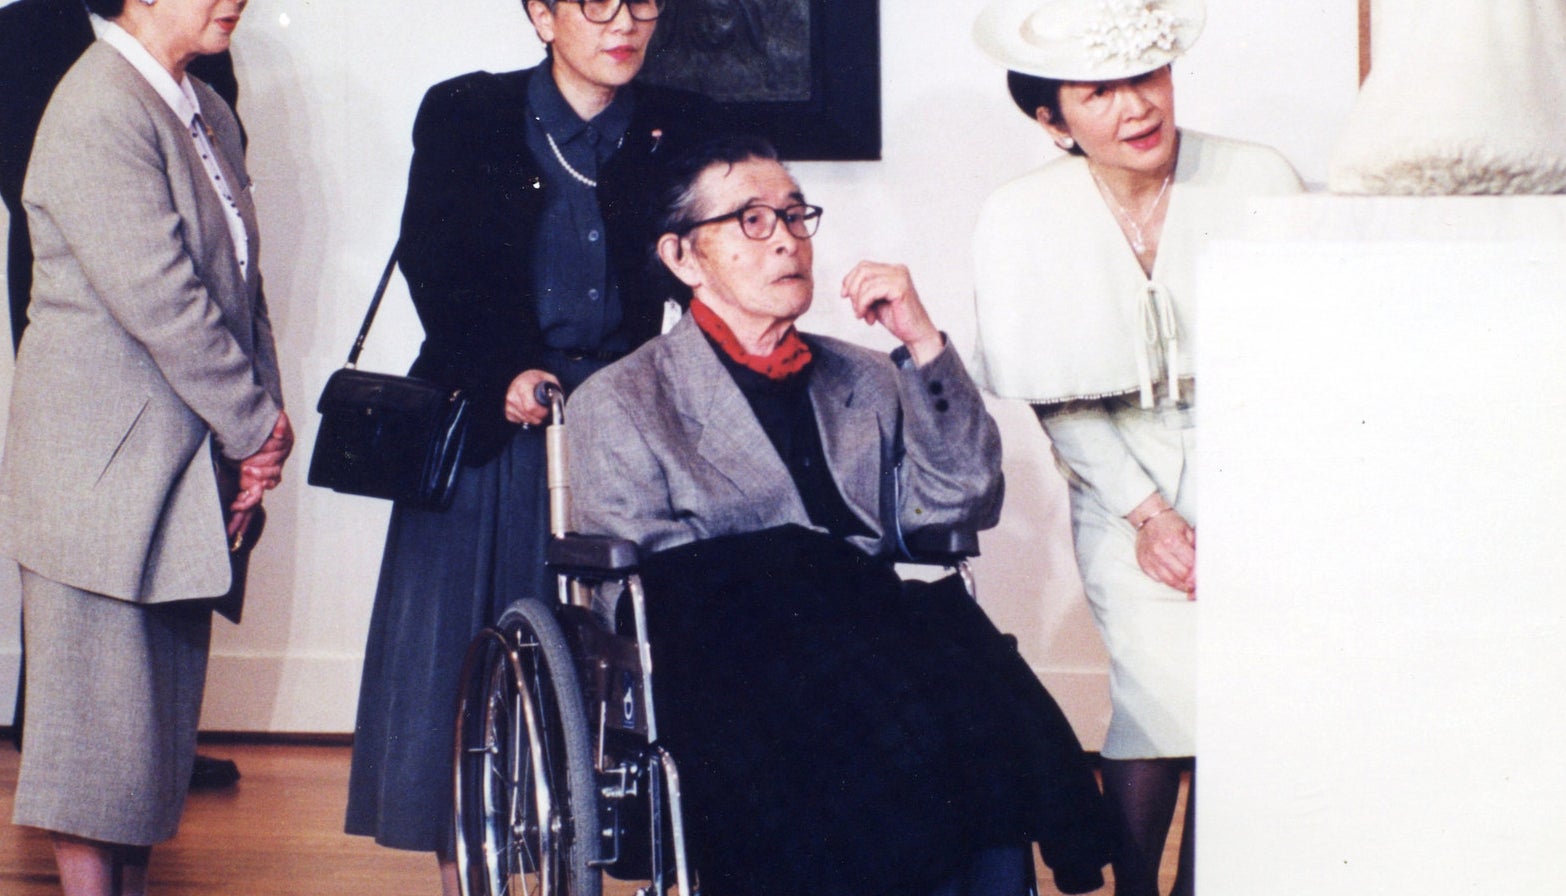 皇后 美智子さまが歩まれた平成の30年 友人が見た苦悩と葛藤の日々